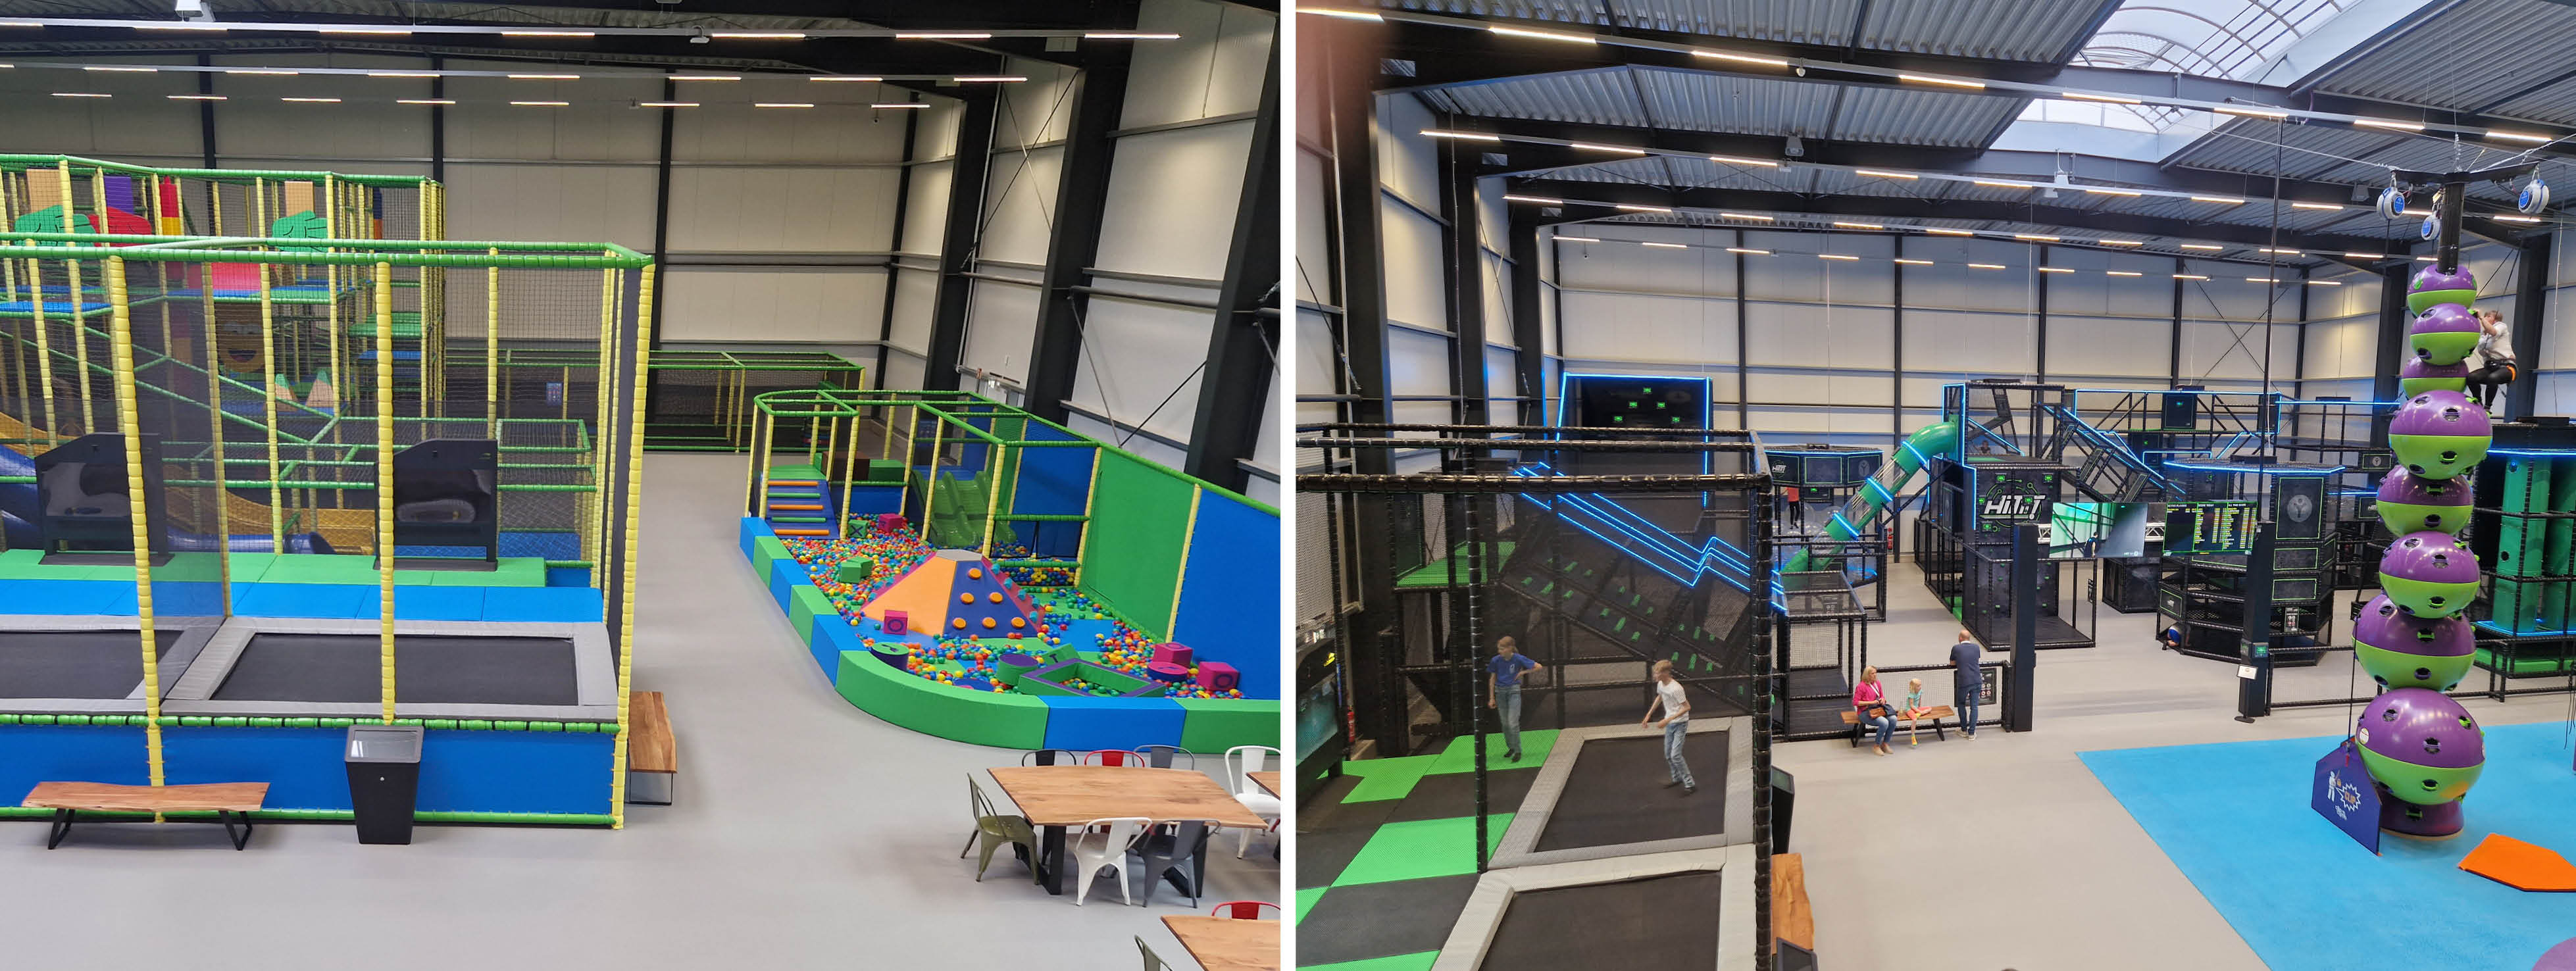 ELI Play supplier of indoor playground Marissa Ferienpark